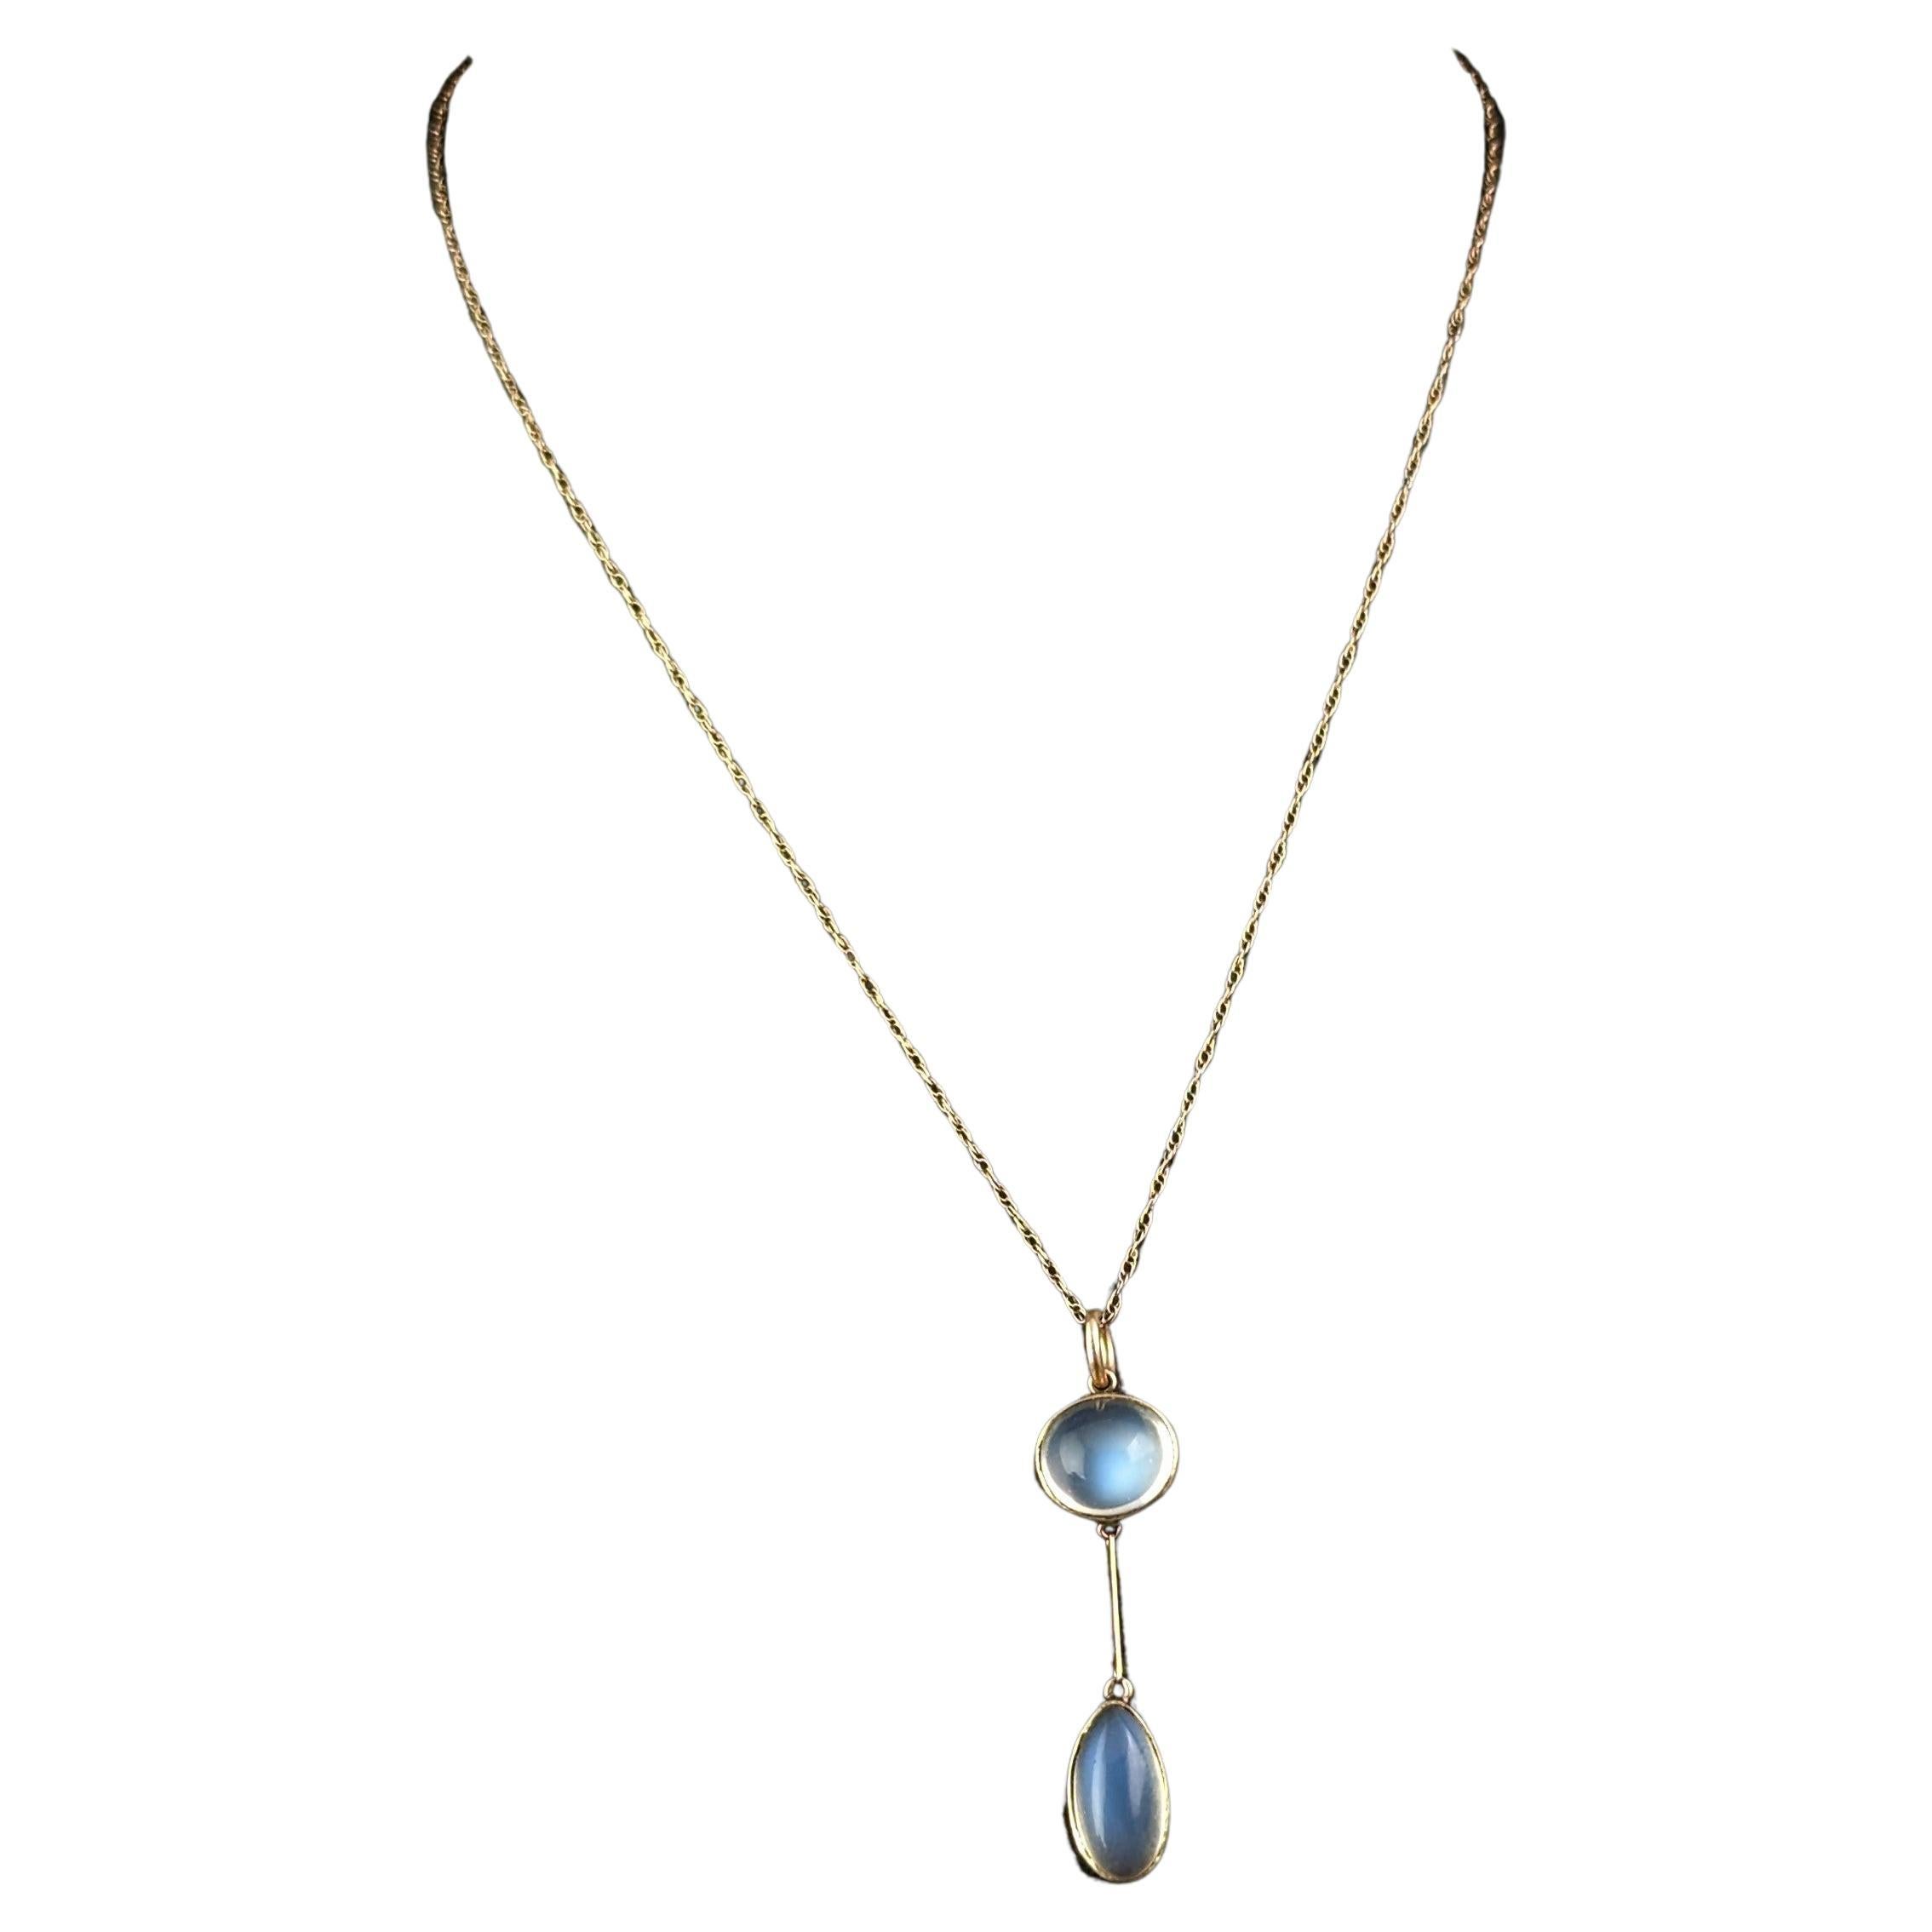 Antique Art Deco Moonstone pendant necklace, 9k gold 